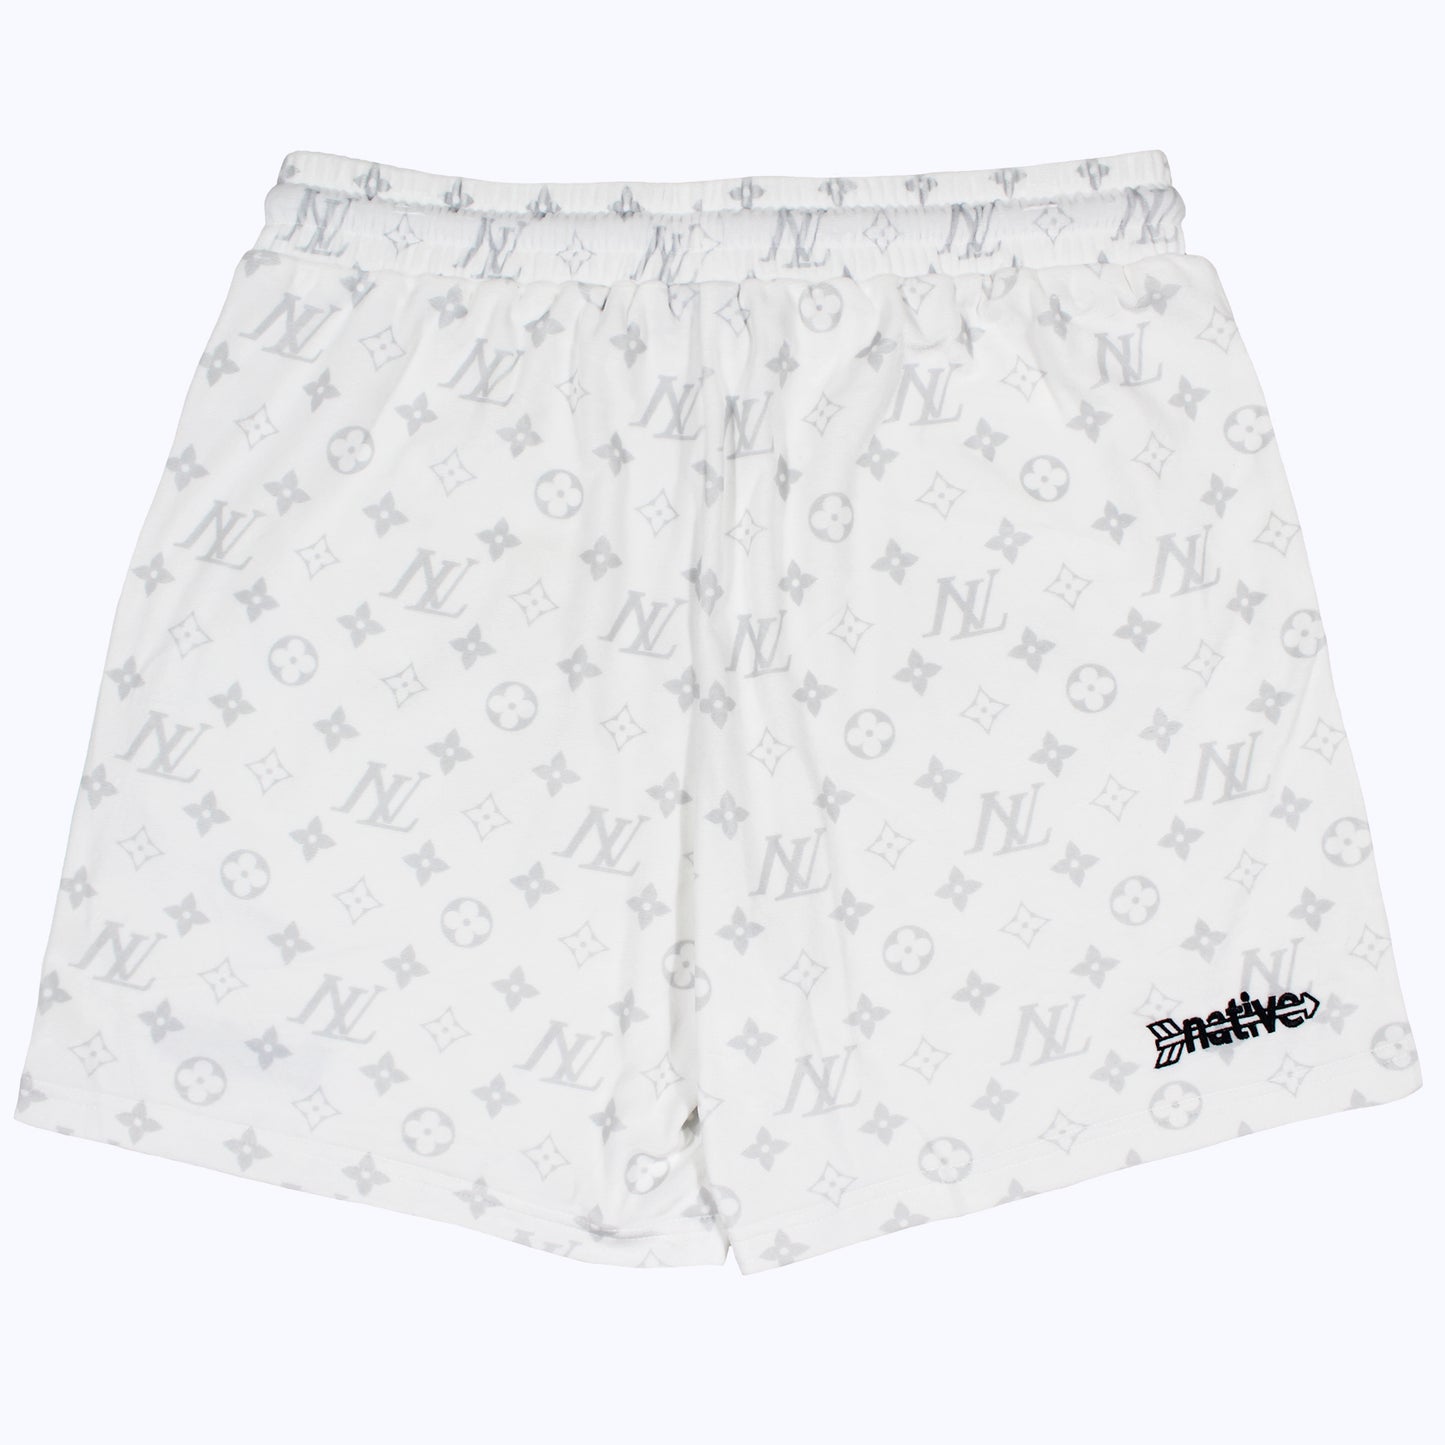 nl velour shorts in white/gray